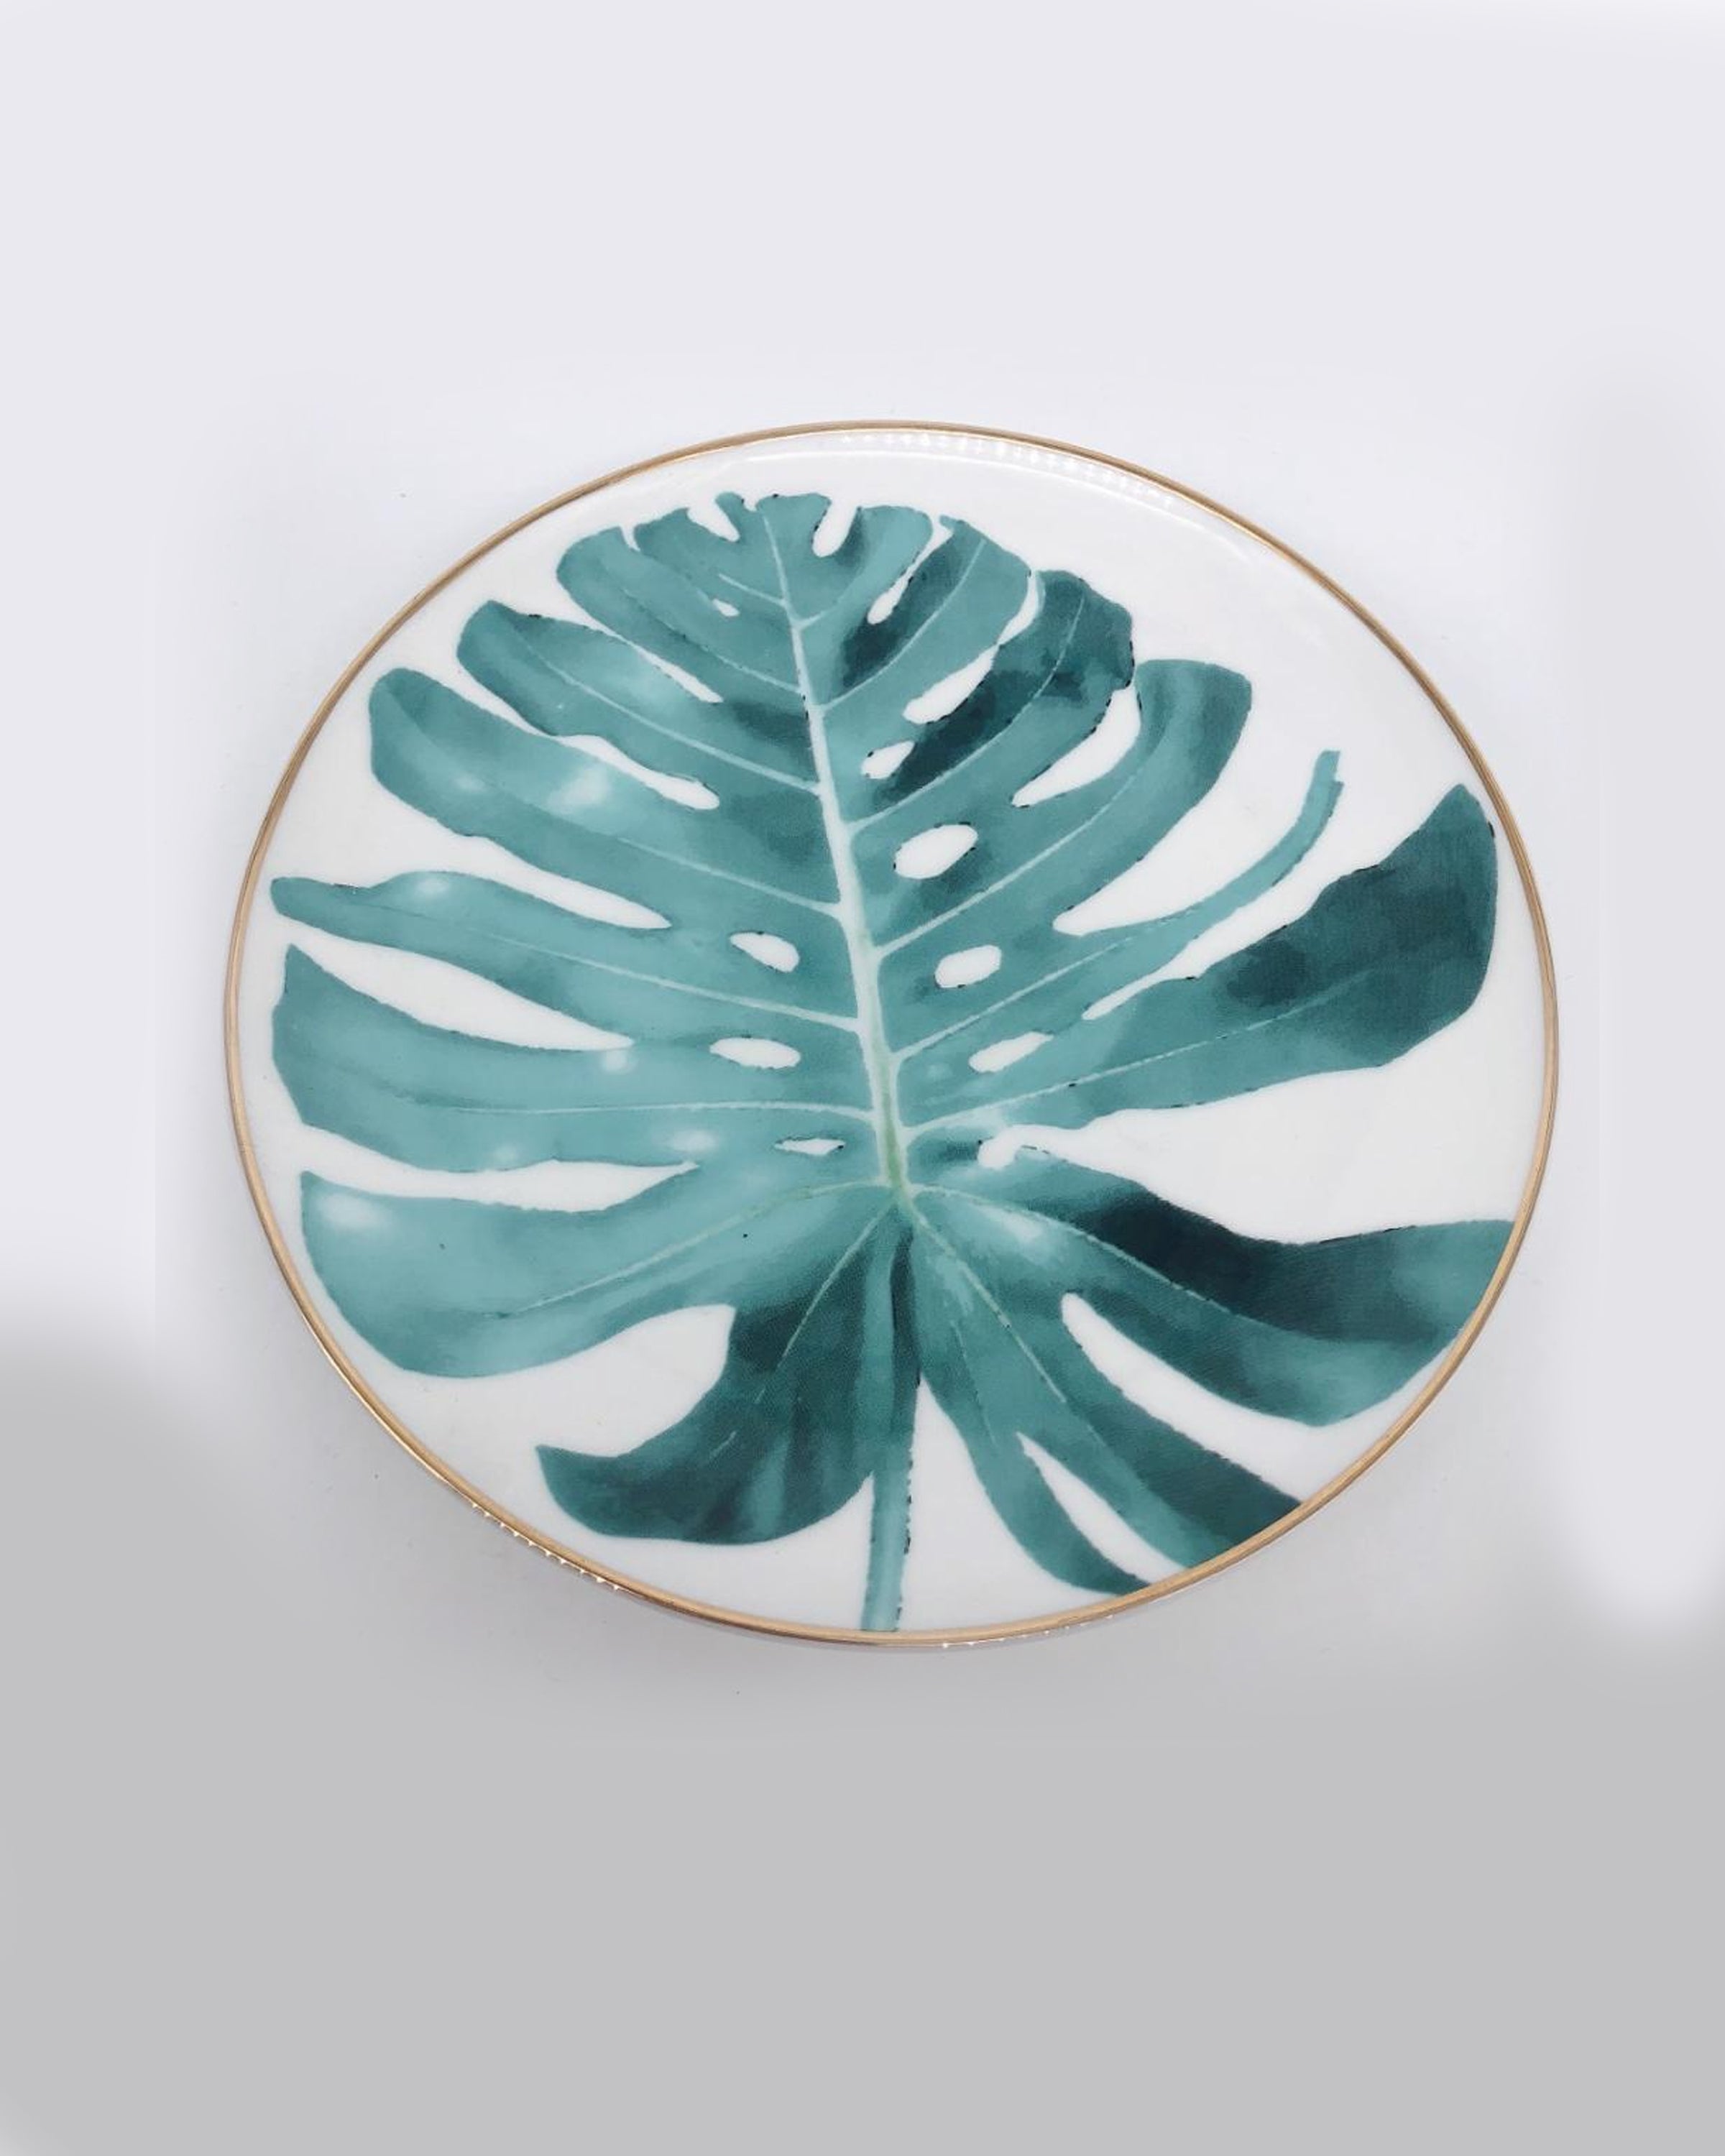 Big Blue Leaf Design White Porcelain Plates Online